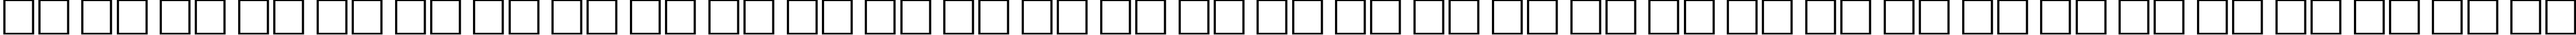 Пример написания русского алфавита шрифтом School Plain:001.00160n